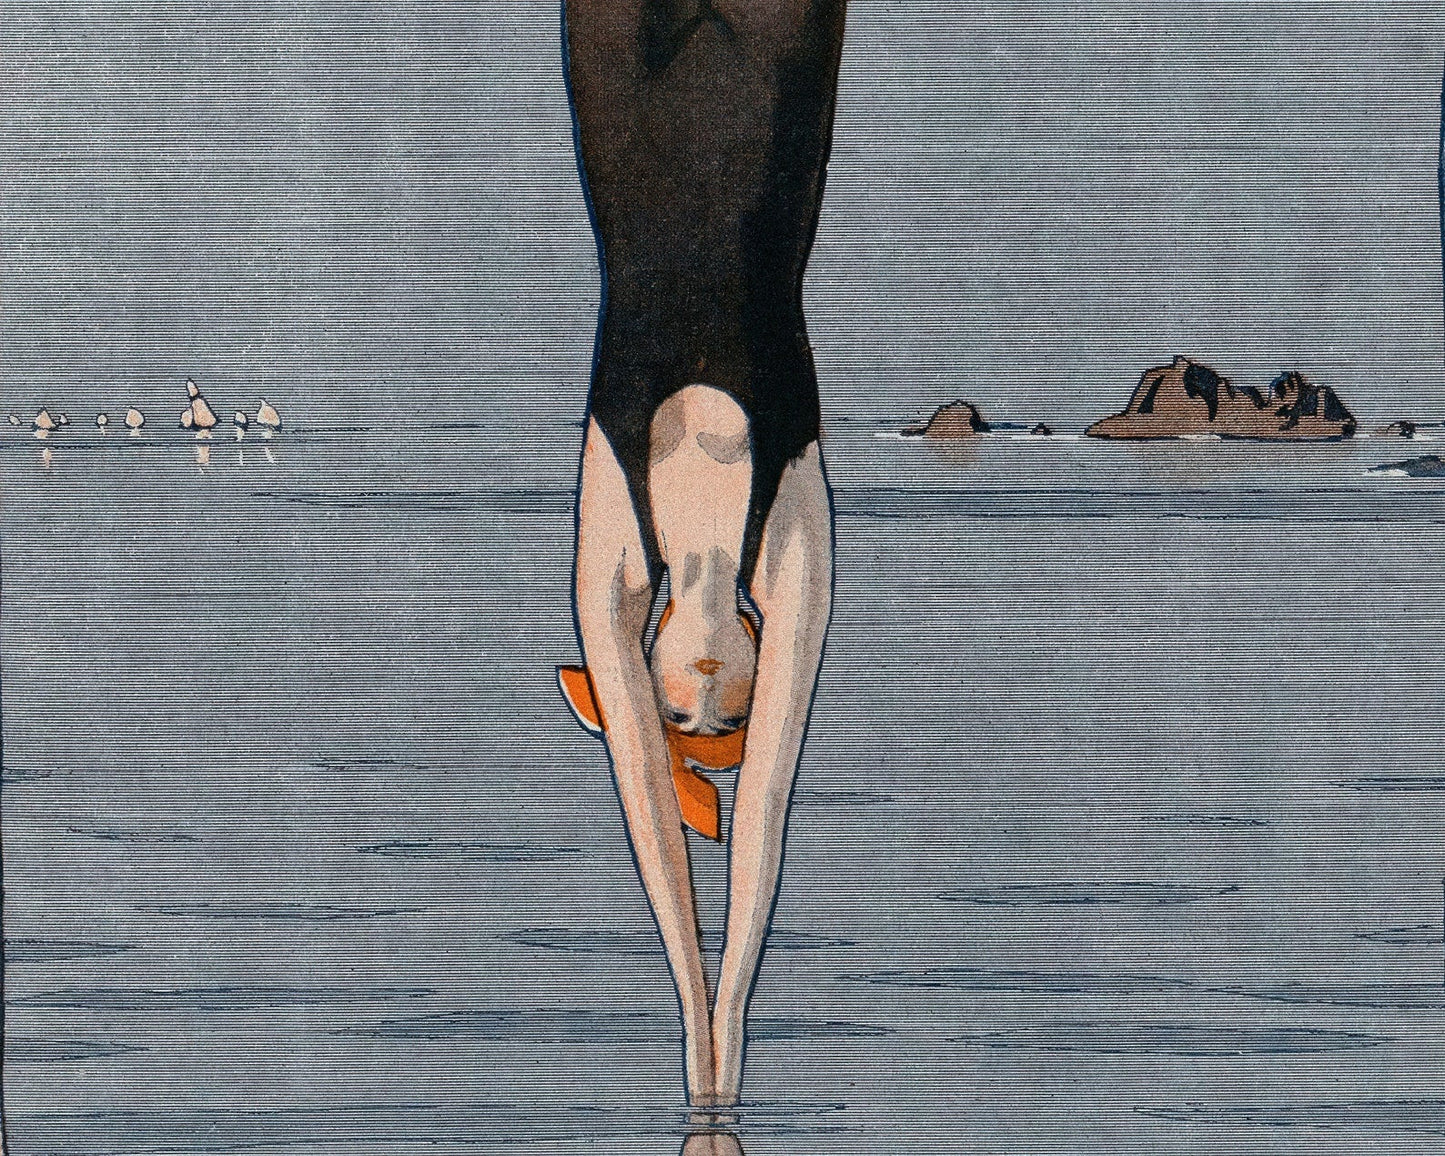 André Édouard Marty "Le Plongeon" La Vie Parisienne Magazine Artwork (c.1918) - Mabon Gallery